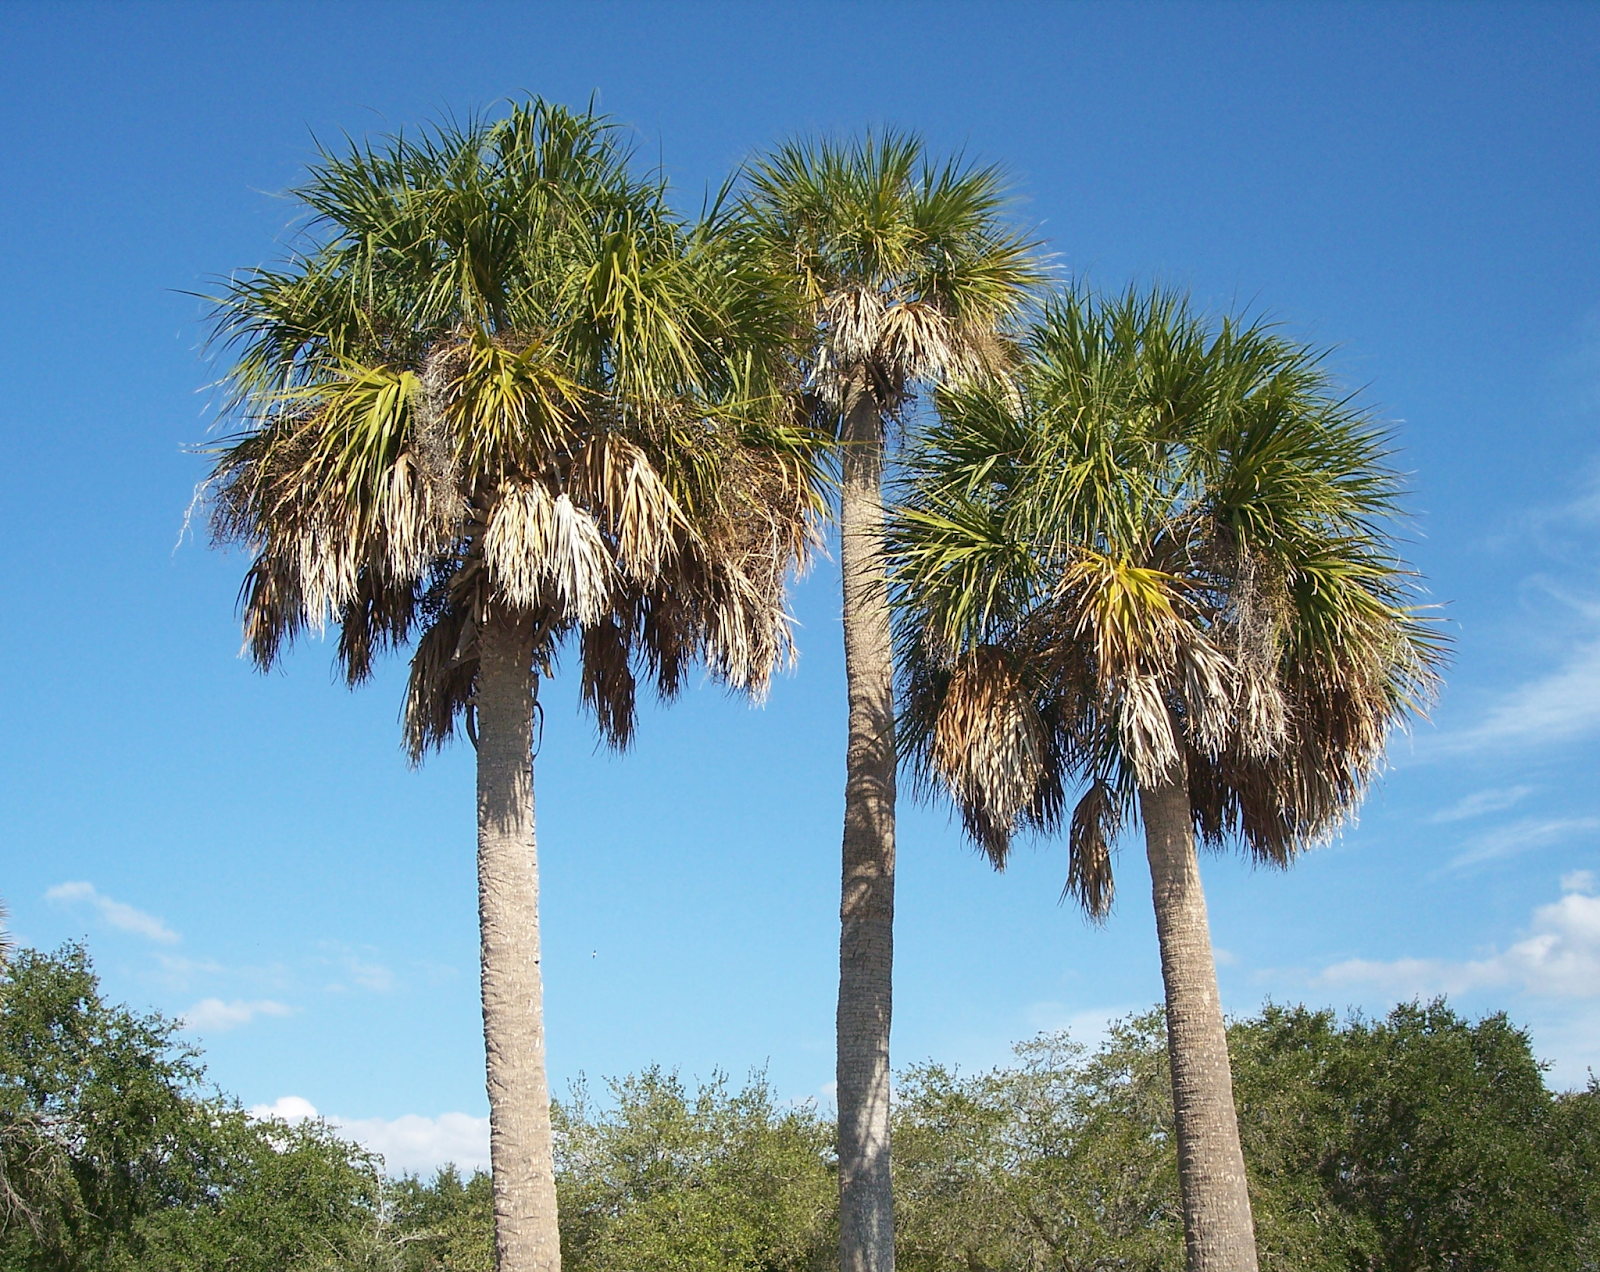 Palmetto Palm (Sabal palmetto)